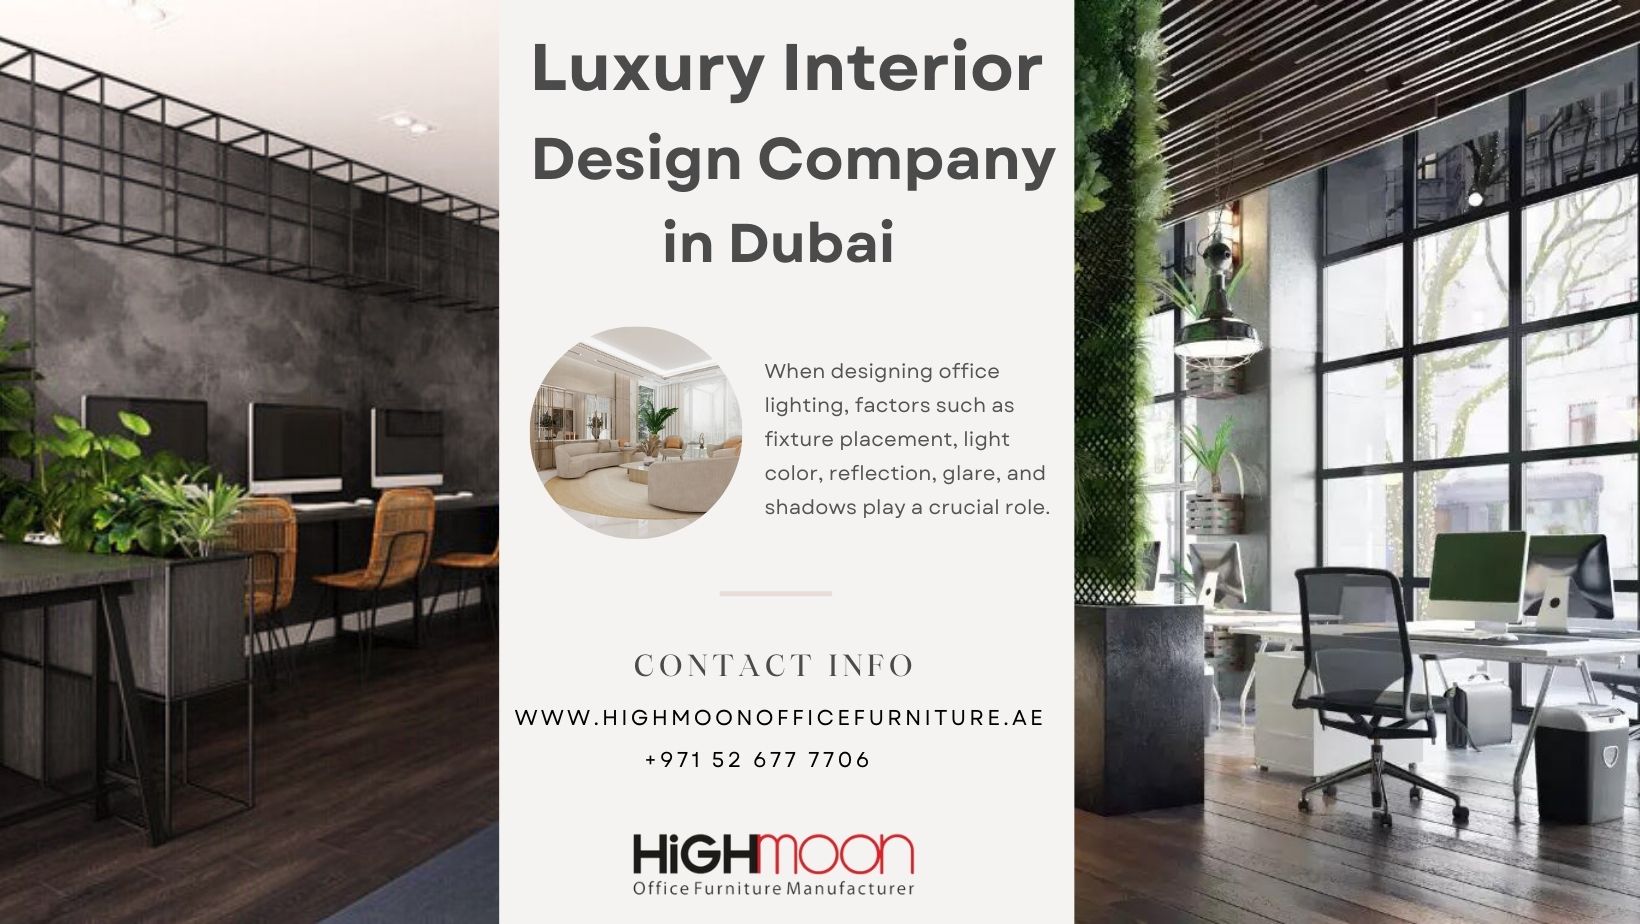 Luxury Interior Design Company in Dubai.